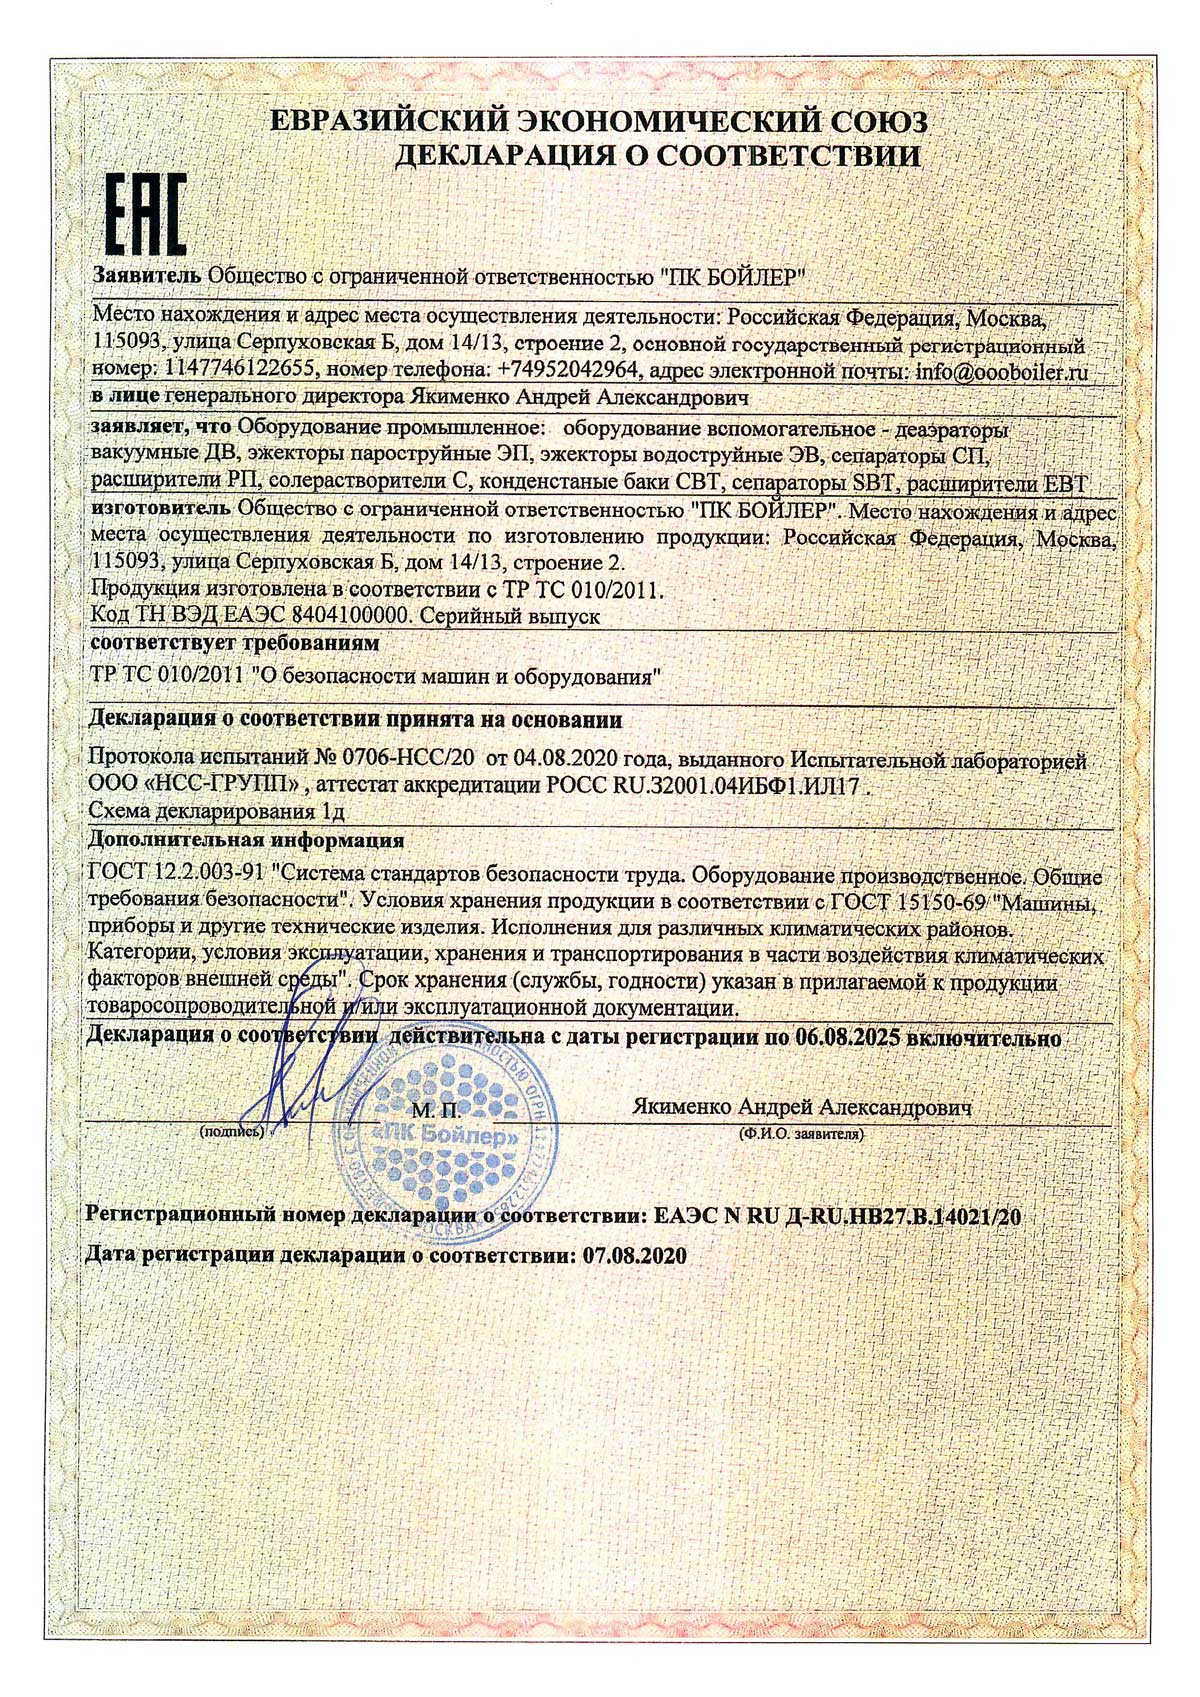 Сертификат соответствия тр ТС 010/2011